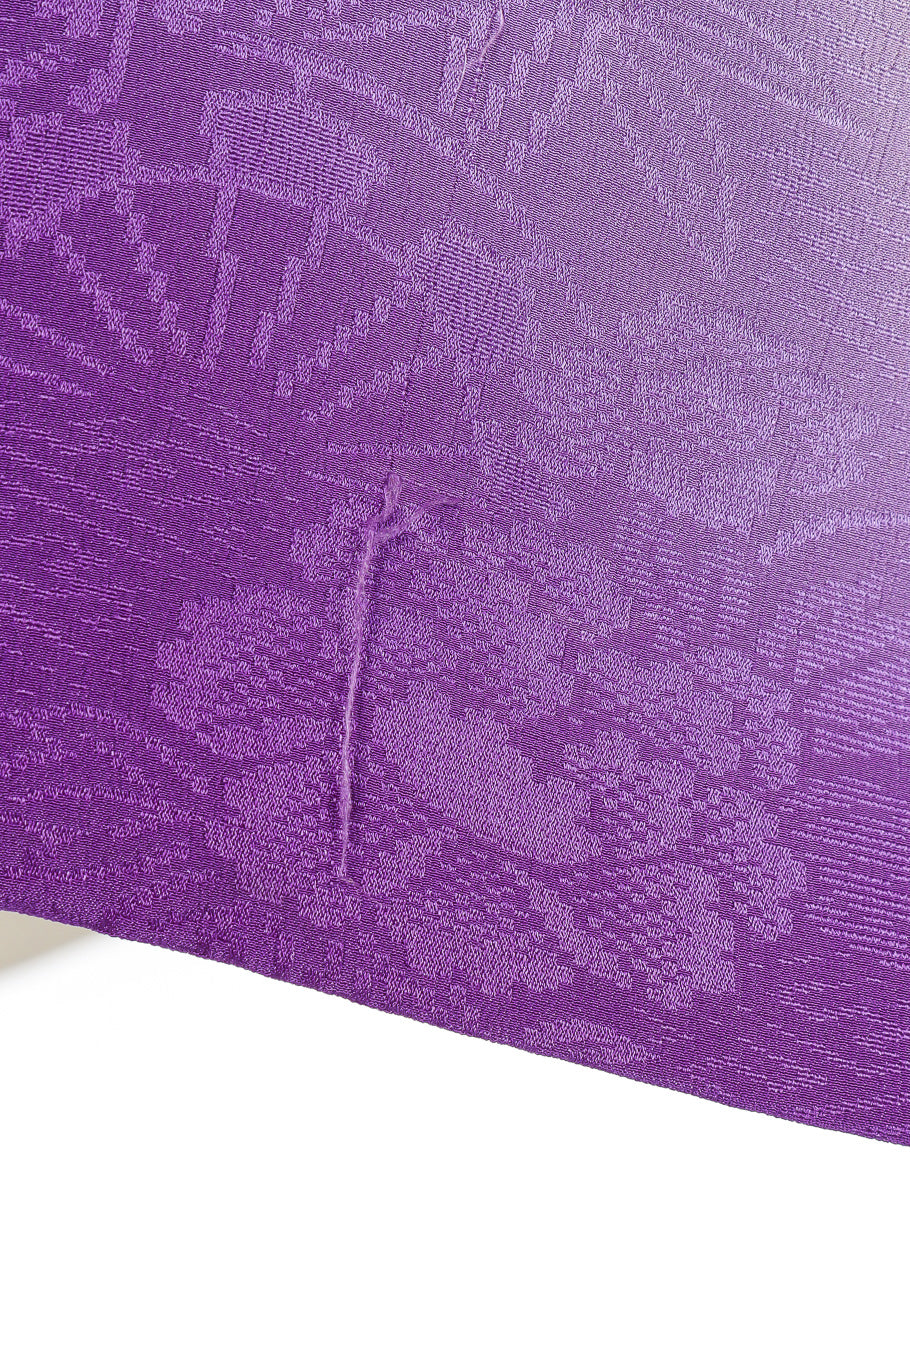 Purple vintage kimono run in fabric close @recessla